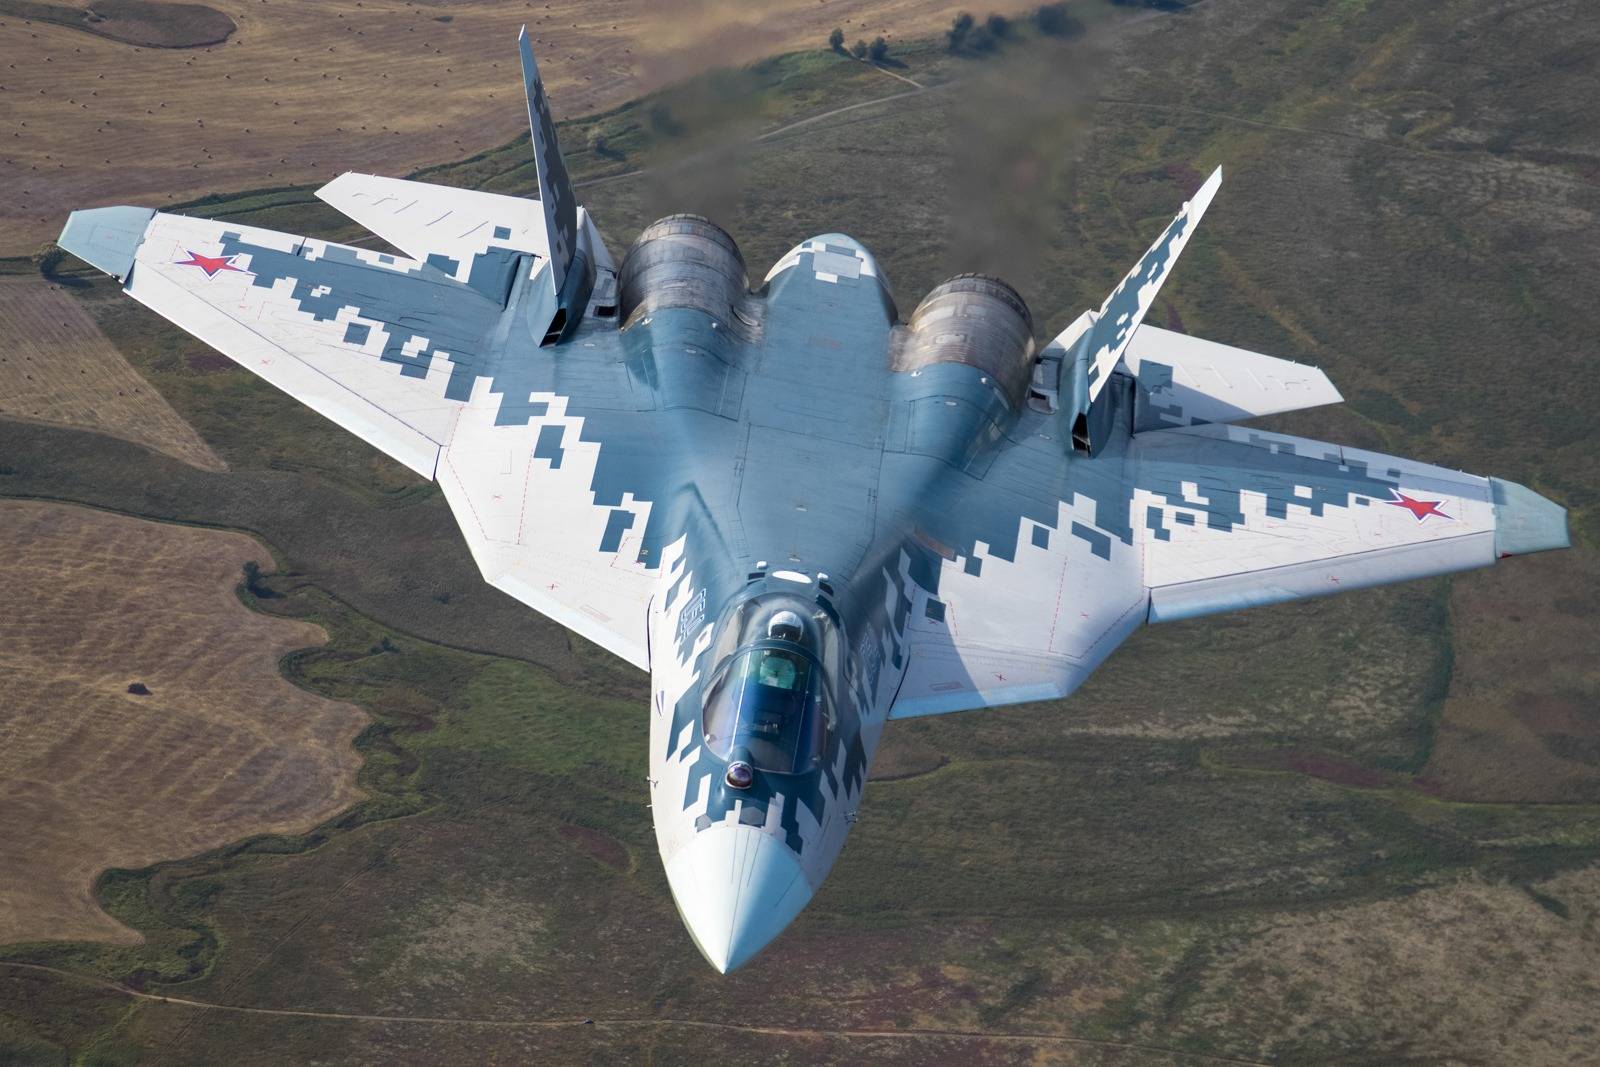 Новейшие военные самолеты россии 2020 - это интересно - шняги.нет